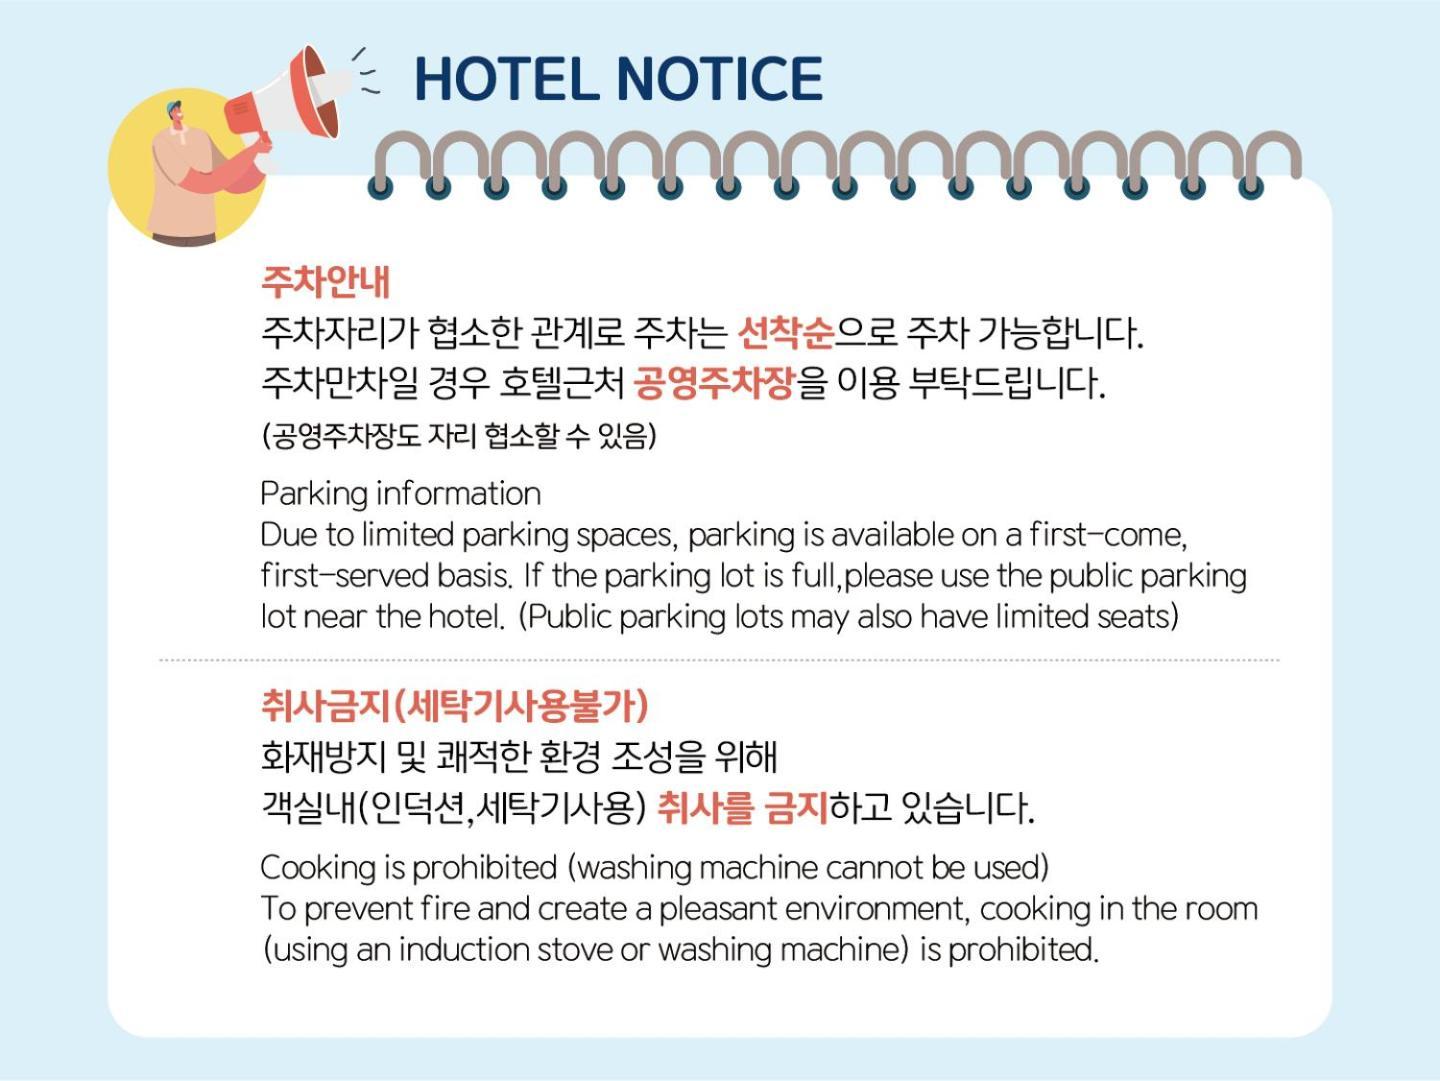 Ocean Park 9 Hotel Incheon Buitenkant foto